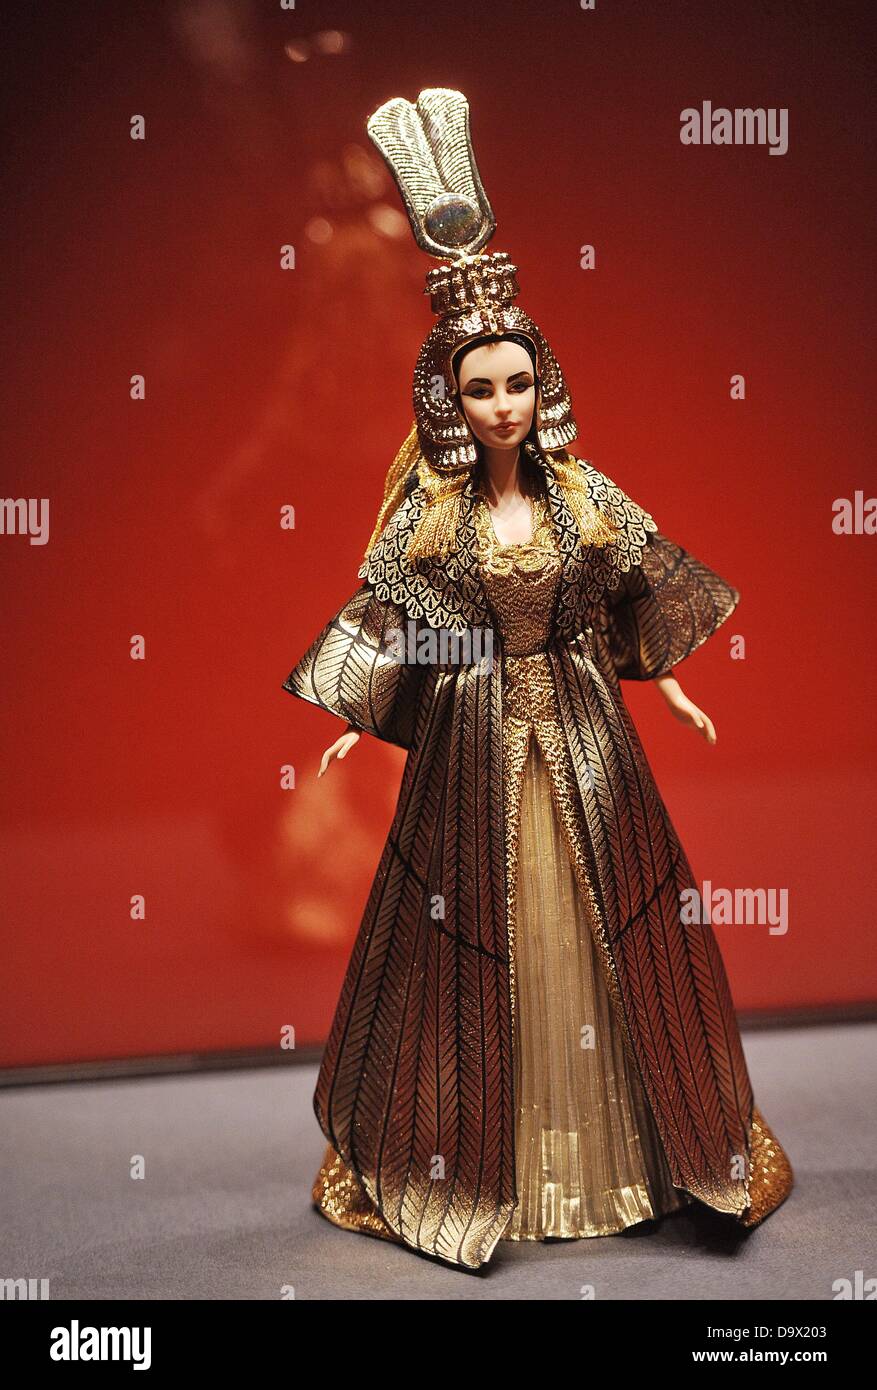 Una Barbie la figura de Elizabeth Taylor en su papel de Cleopatra está en la exposición "Cleopatra - La eterna diva' en el salón de arte y exposiciones de la República Federal de Alemania en Bonn, Alemania, 27 de junio de 2013. La exposición estará abierta al público del 28 de junio al 06 de octubre de 2013. Foto: HENNING KAISER Foto de stock